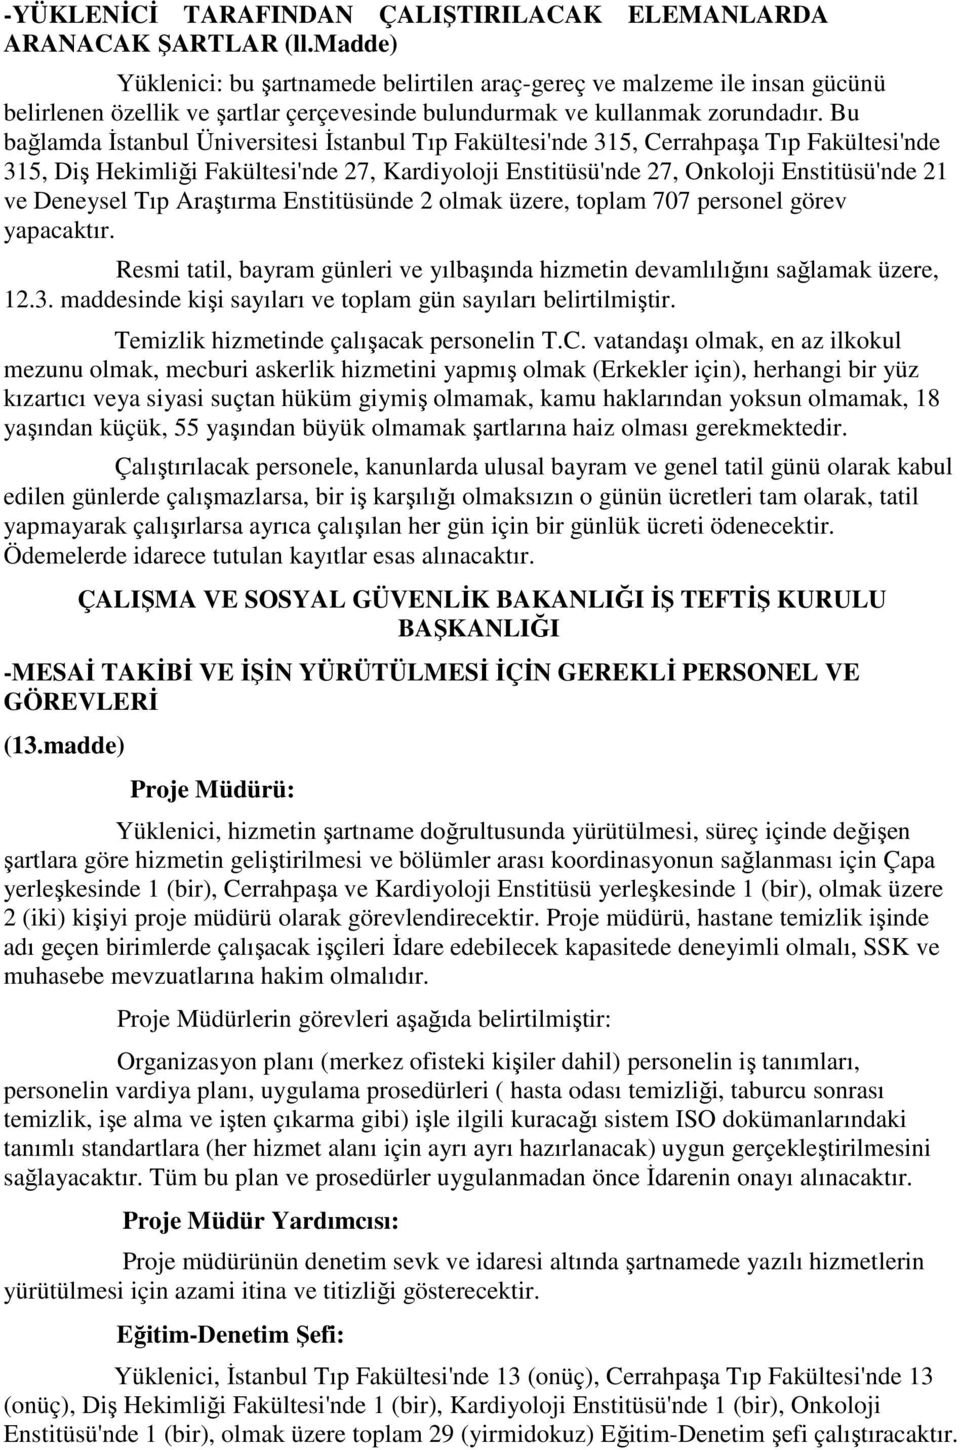 Bu bağlamda İstanbul Üniversitesi İstanbul Tıp Fakültesi'nde 315, Cerrahpaşa Tıp Fakültesi'nde 315, Diş Hekimliği Fakültesi'nde 27, Kardiyoloji Enstitüsü'nde 27, Onkoloji Enstitüsü'nde 21 ve Deneysel